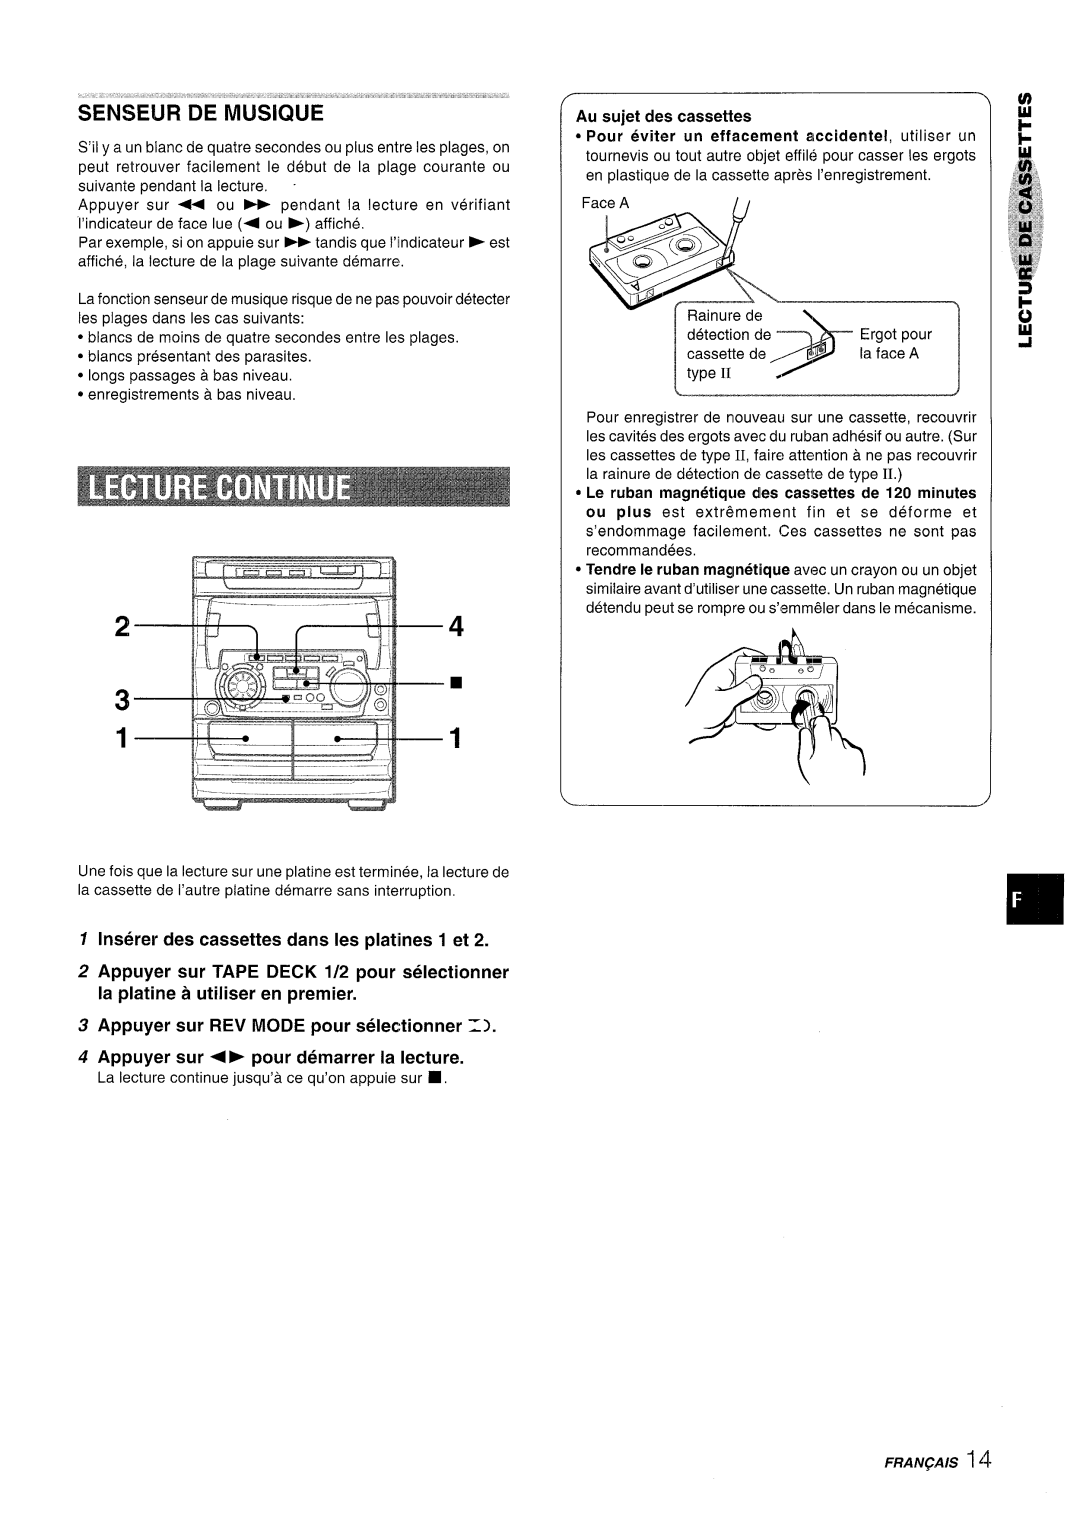 Sony NSX-A707 manual Inserer des cassettes clans Ies platines 1 et, Appuyer sur REV MODE pour selectionner 